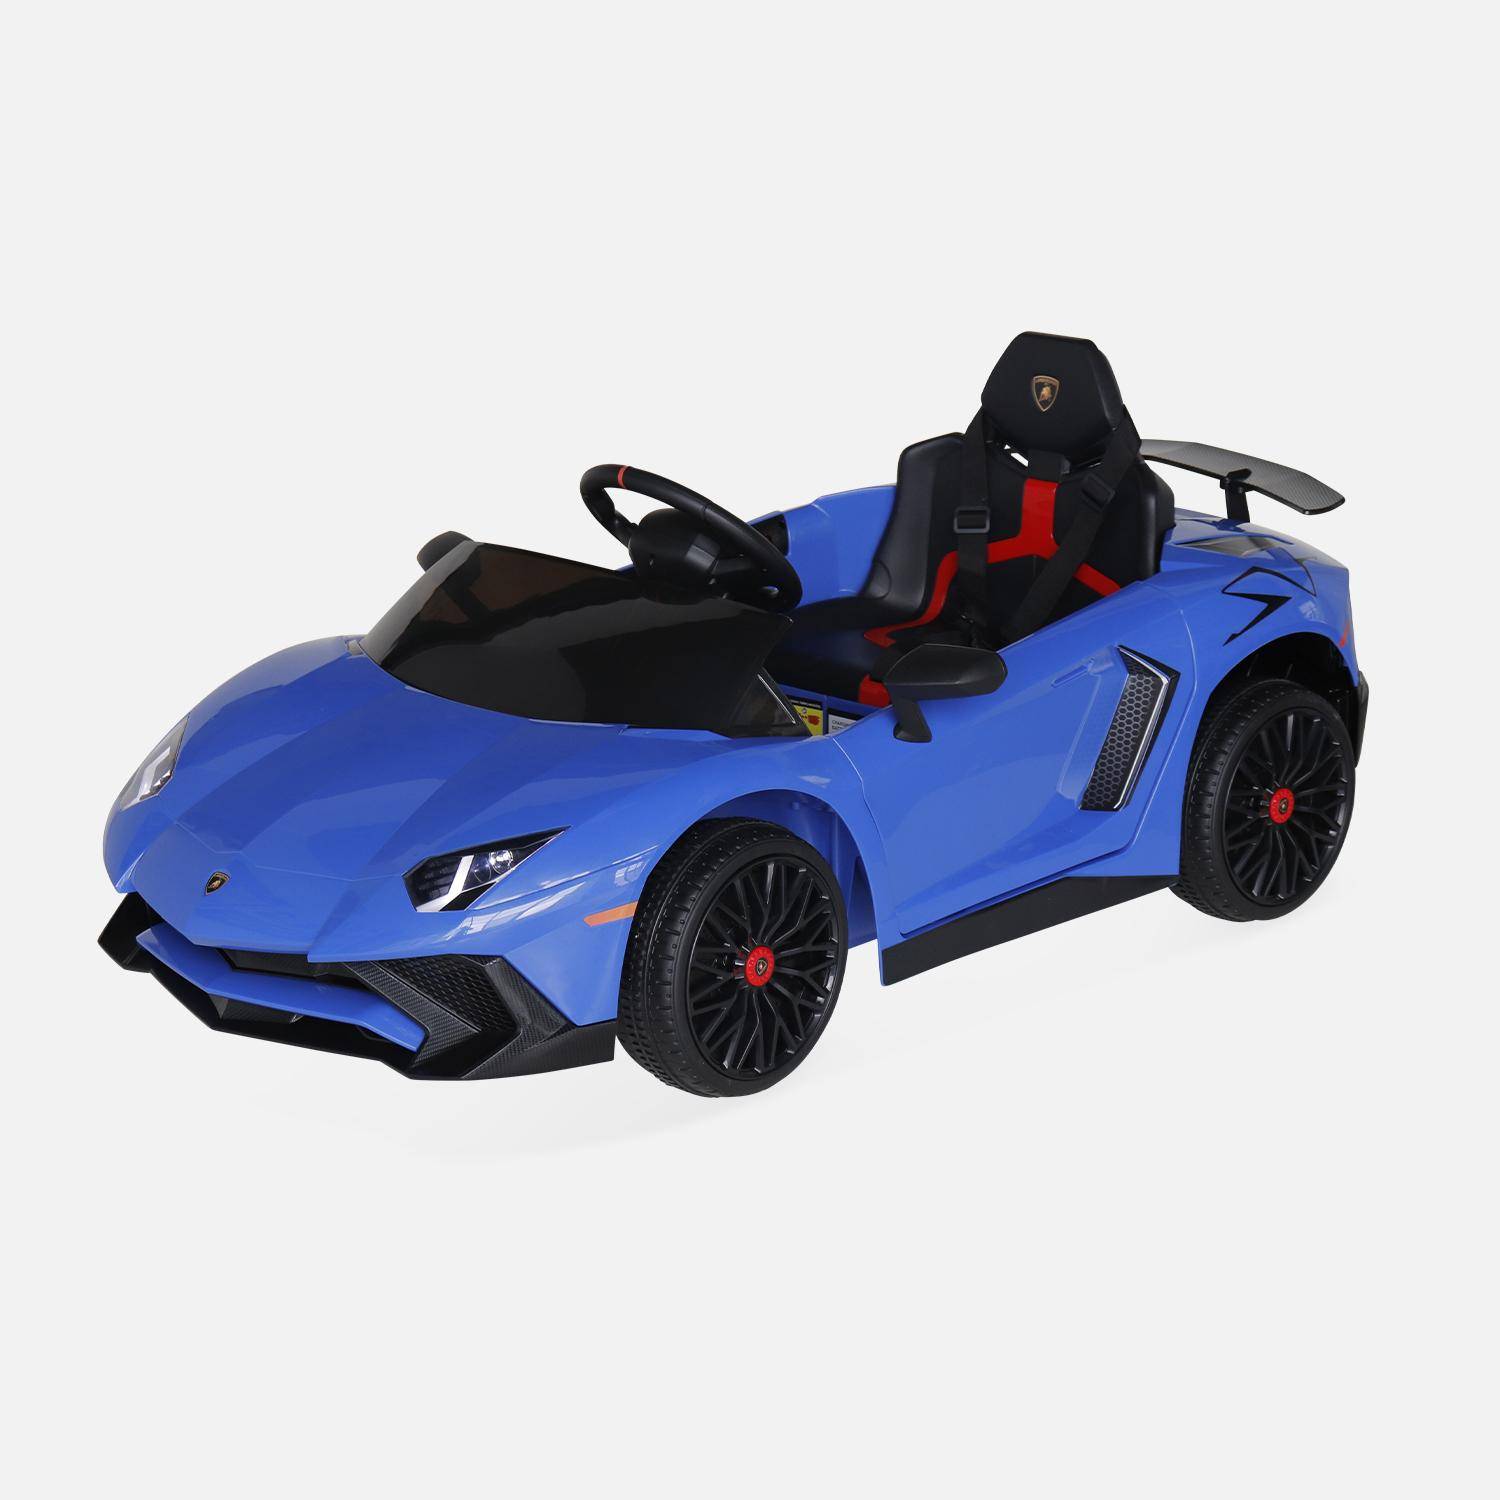 12V elektrische Lamborghini kinderauto, blauw, 1 zitplaats, met radio, afstandsbediening, MP3, USB-poort en functionele koplampen,sweeek,Photo3